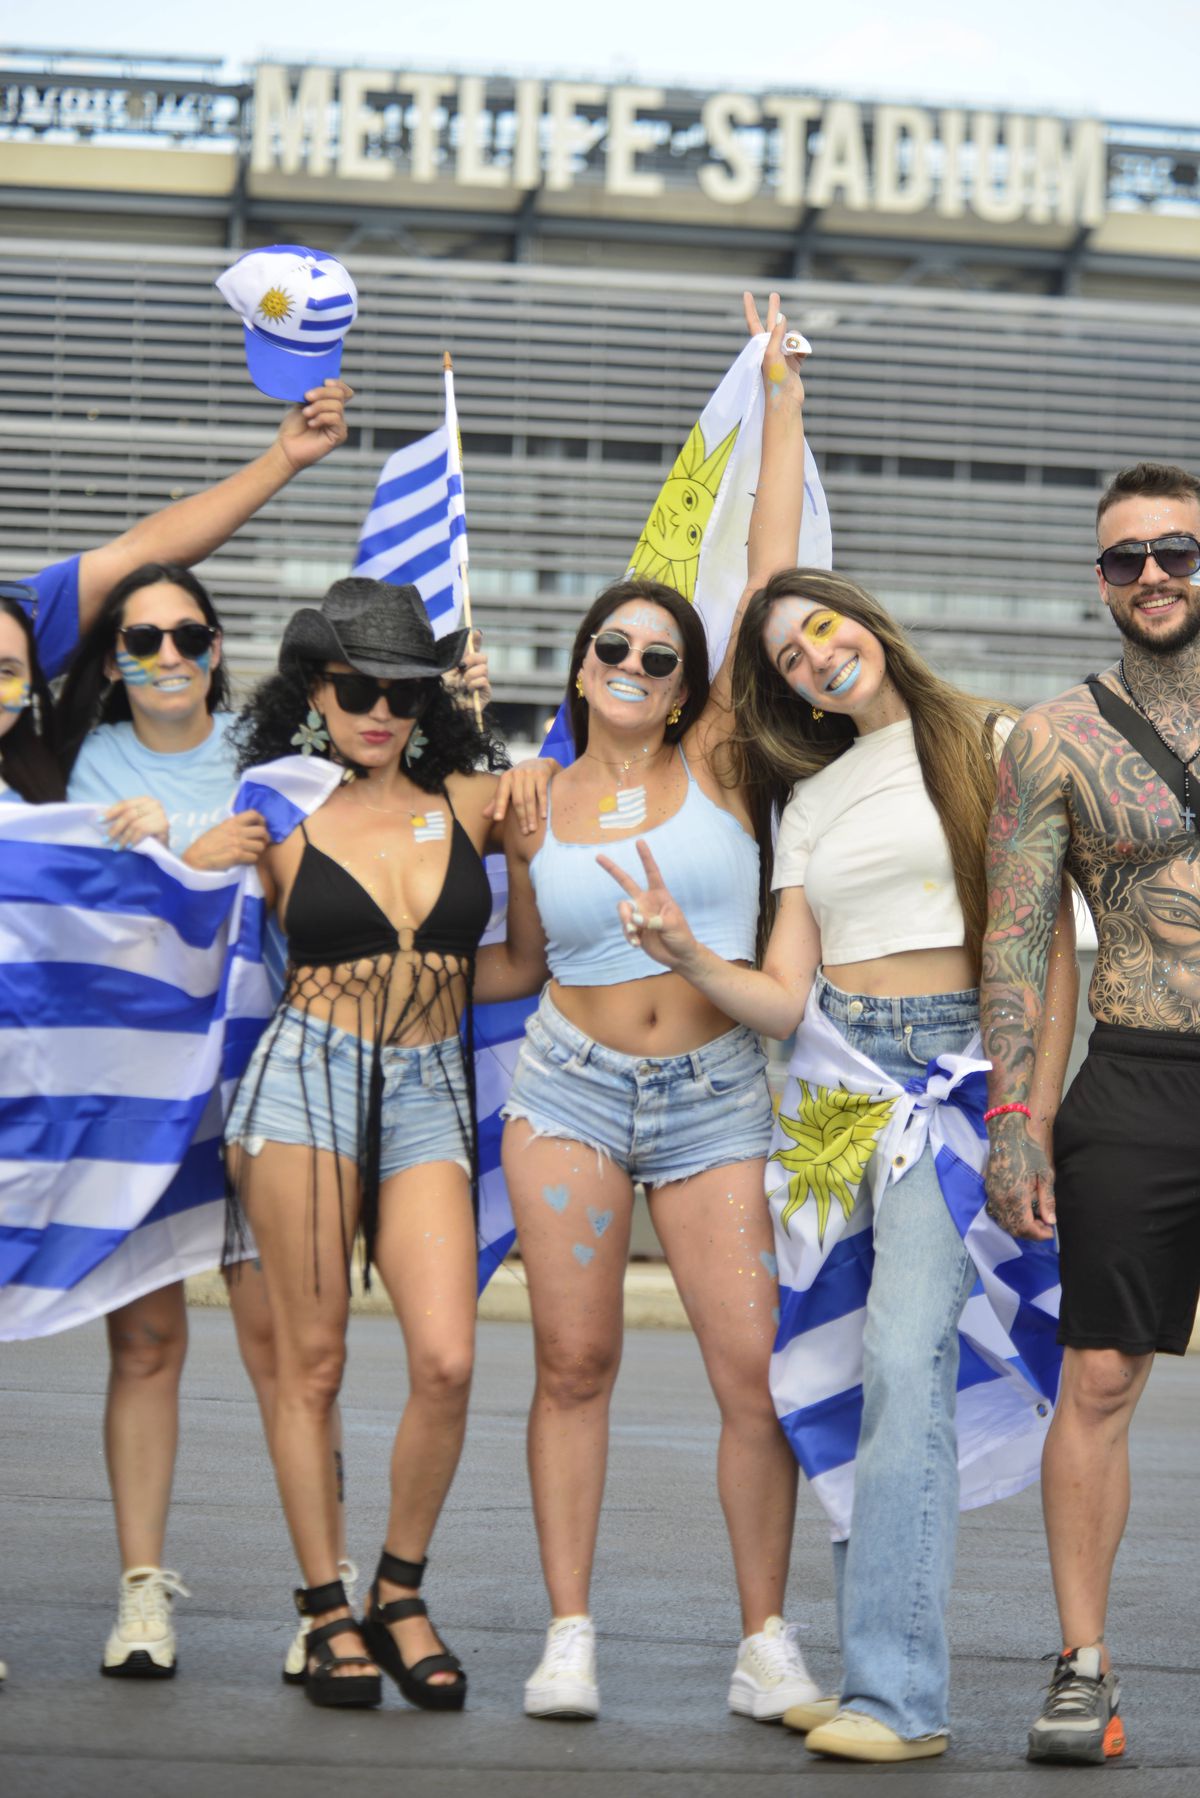 Șoc la Copa America! Ce a pățit SUA, acasă, în fața a 60.000 de spectatori » Uruguay a defilat, cu Nunez și Valverde dezlănțuiți